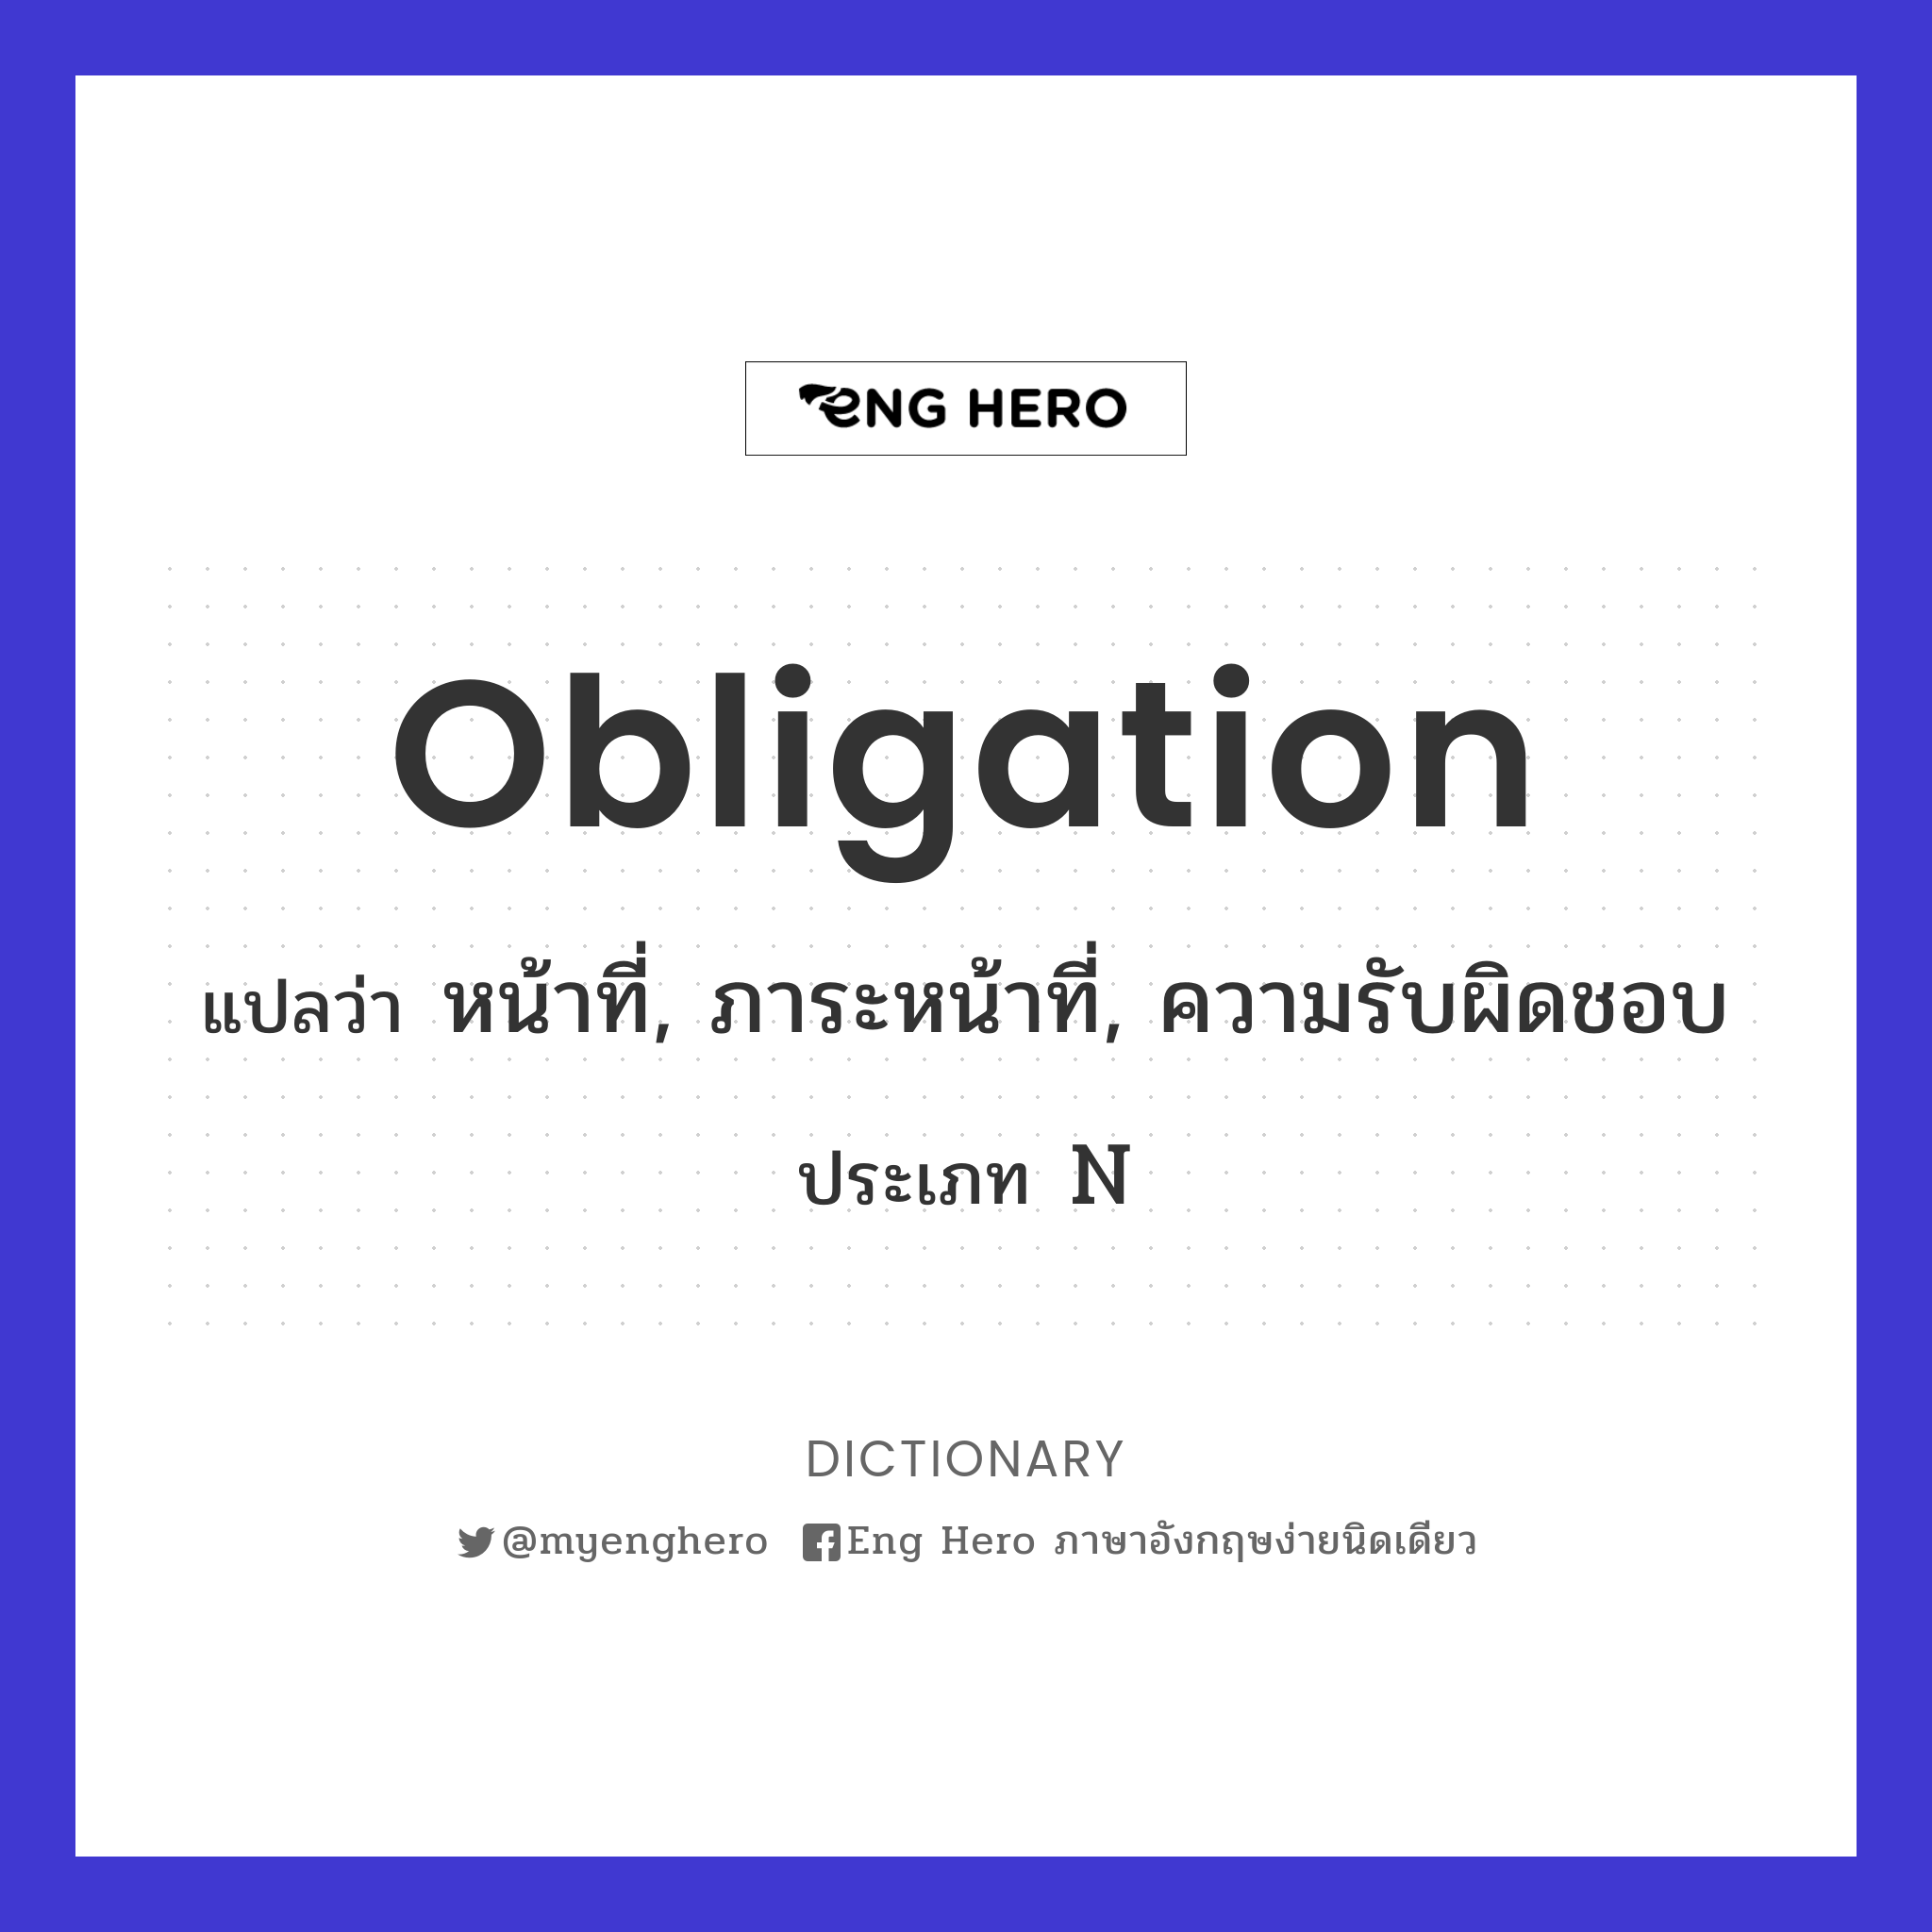 obligation